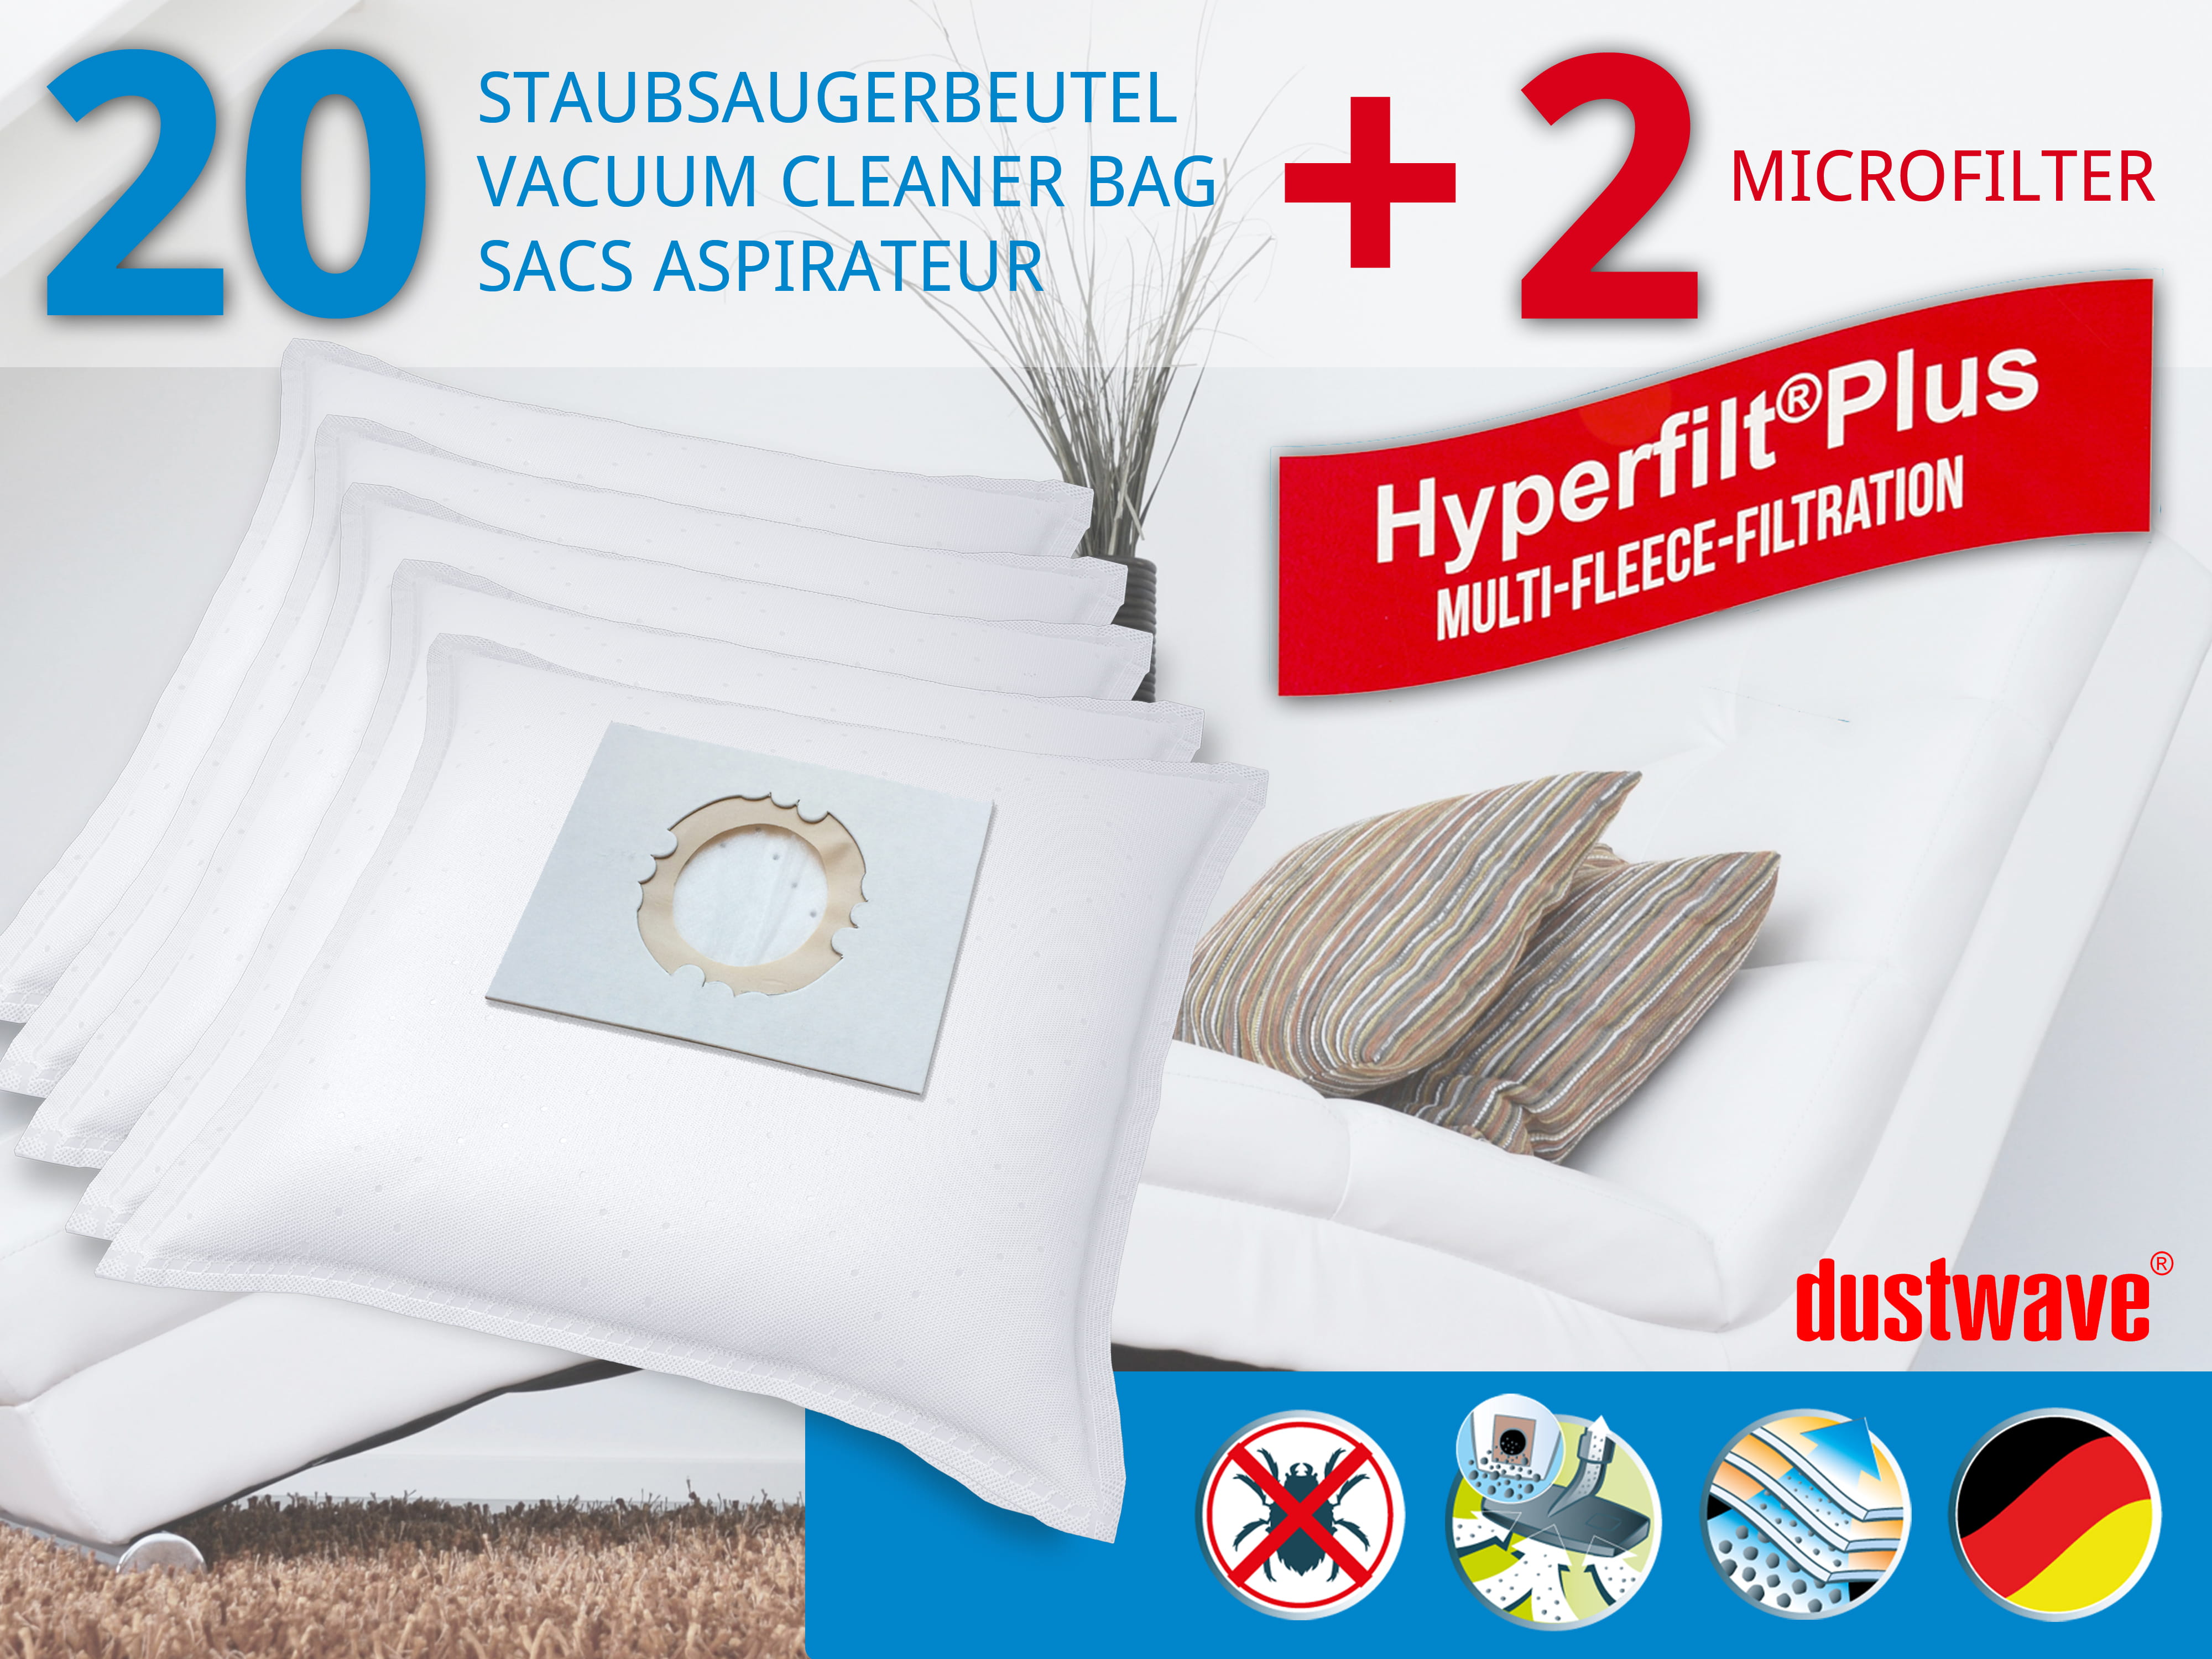 Dustwave® Premium 20 Staubsaugerbeutel für Bosch 1609200934 - hocheffizient, mehrlagiges Mikrovlies mit Hygieneverschluss - Made in Germany